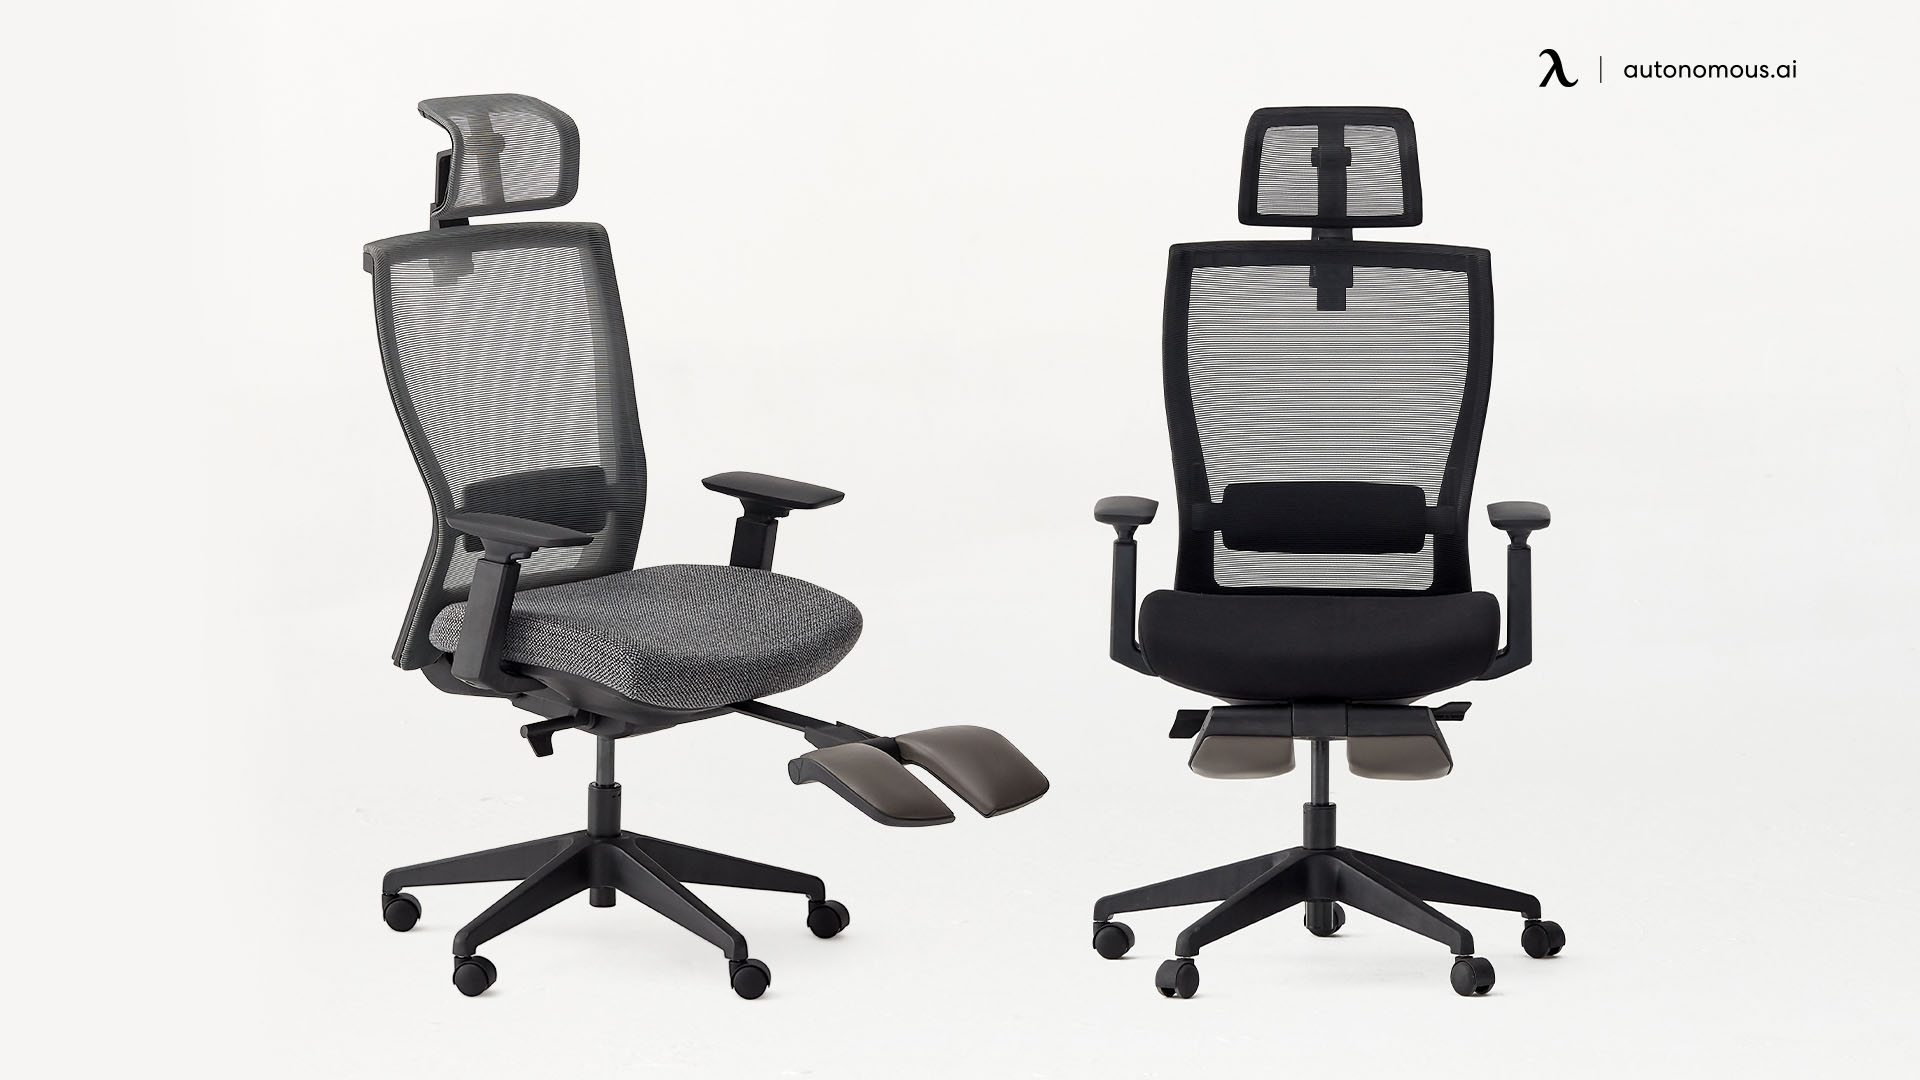 ErgoChair Recline ergonomic swivel computer chair